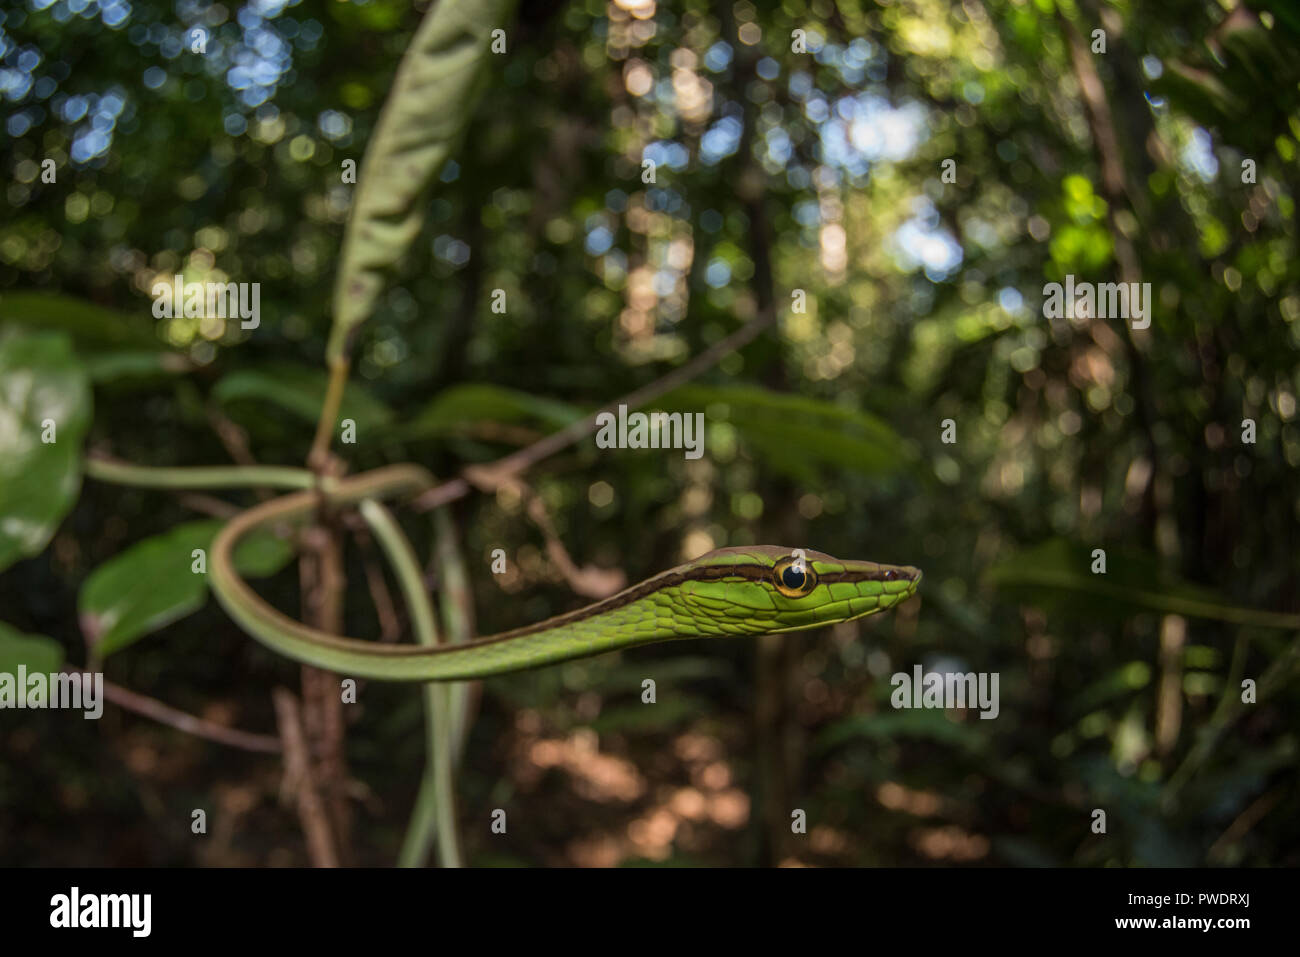 Ein weinstock Schlange (Xenoxybelis argenteus) ist auch unter den Zweigen und Vegetation ruft es zu Hause in den peruanischen Dschungel verborgen. Stockfoto